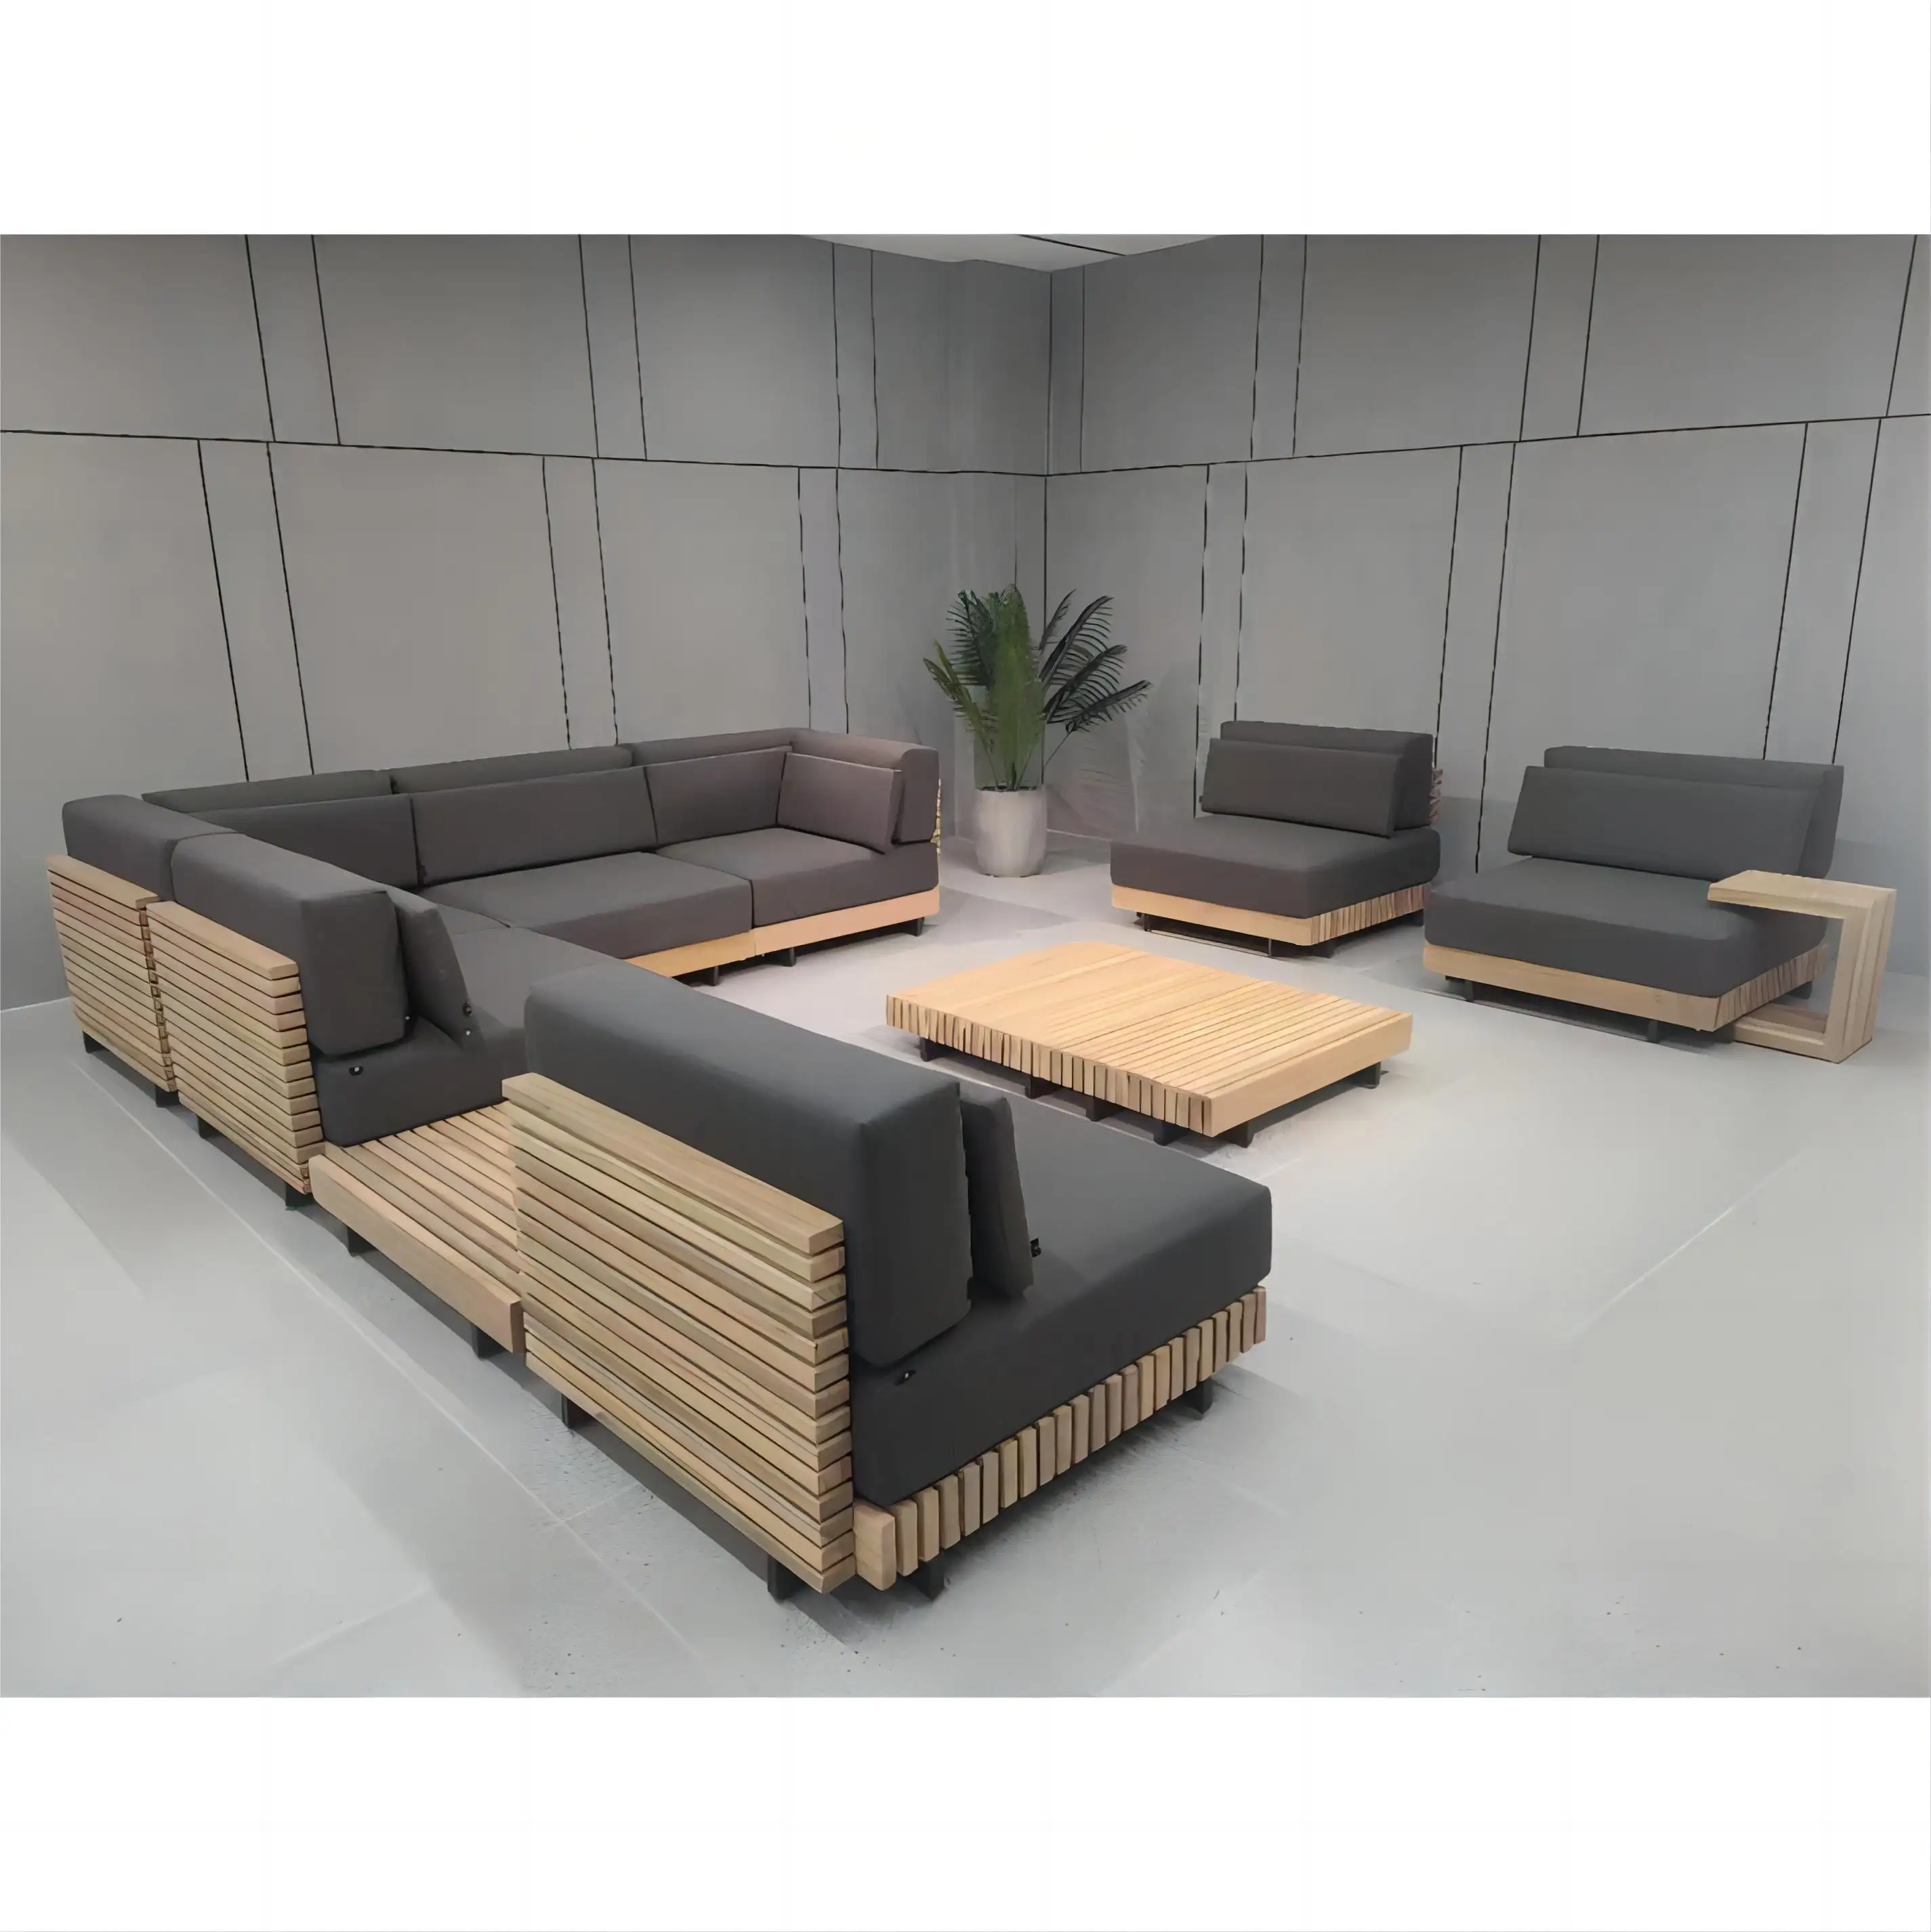 Lujo jardín/Patio/muebles de exterior sólido de madera de teca natural sofá de jardín conjunto